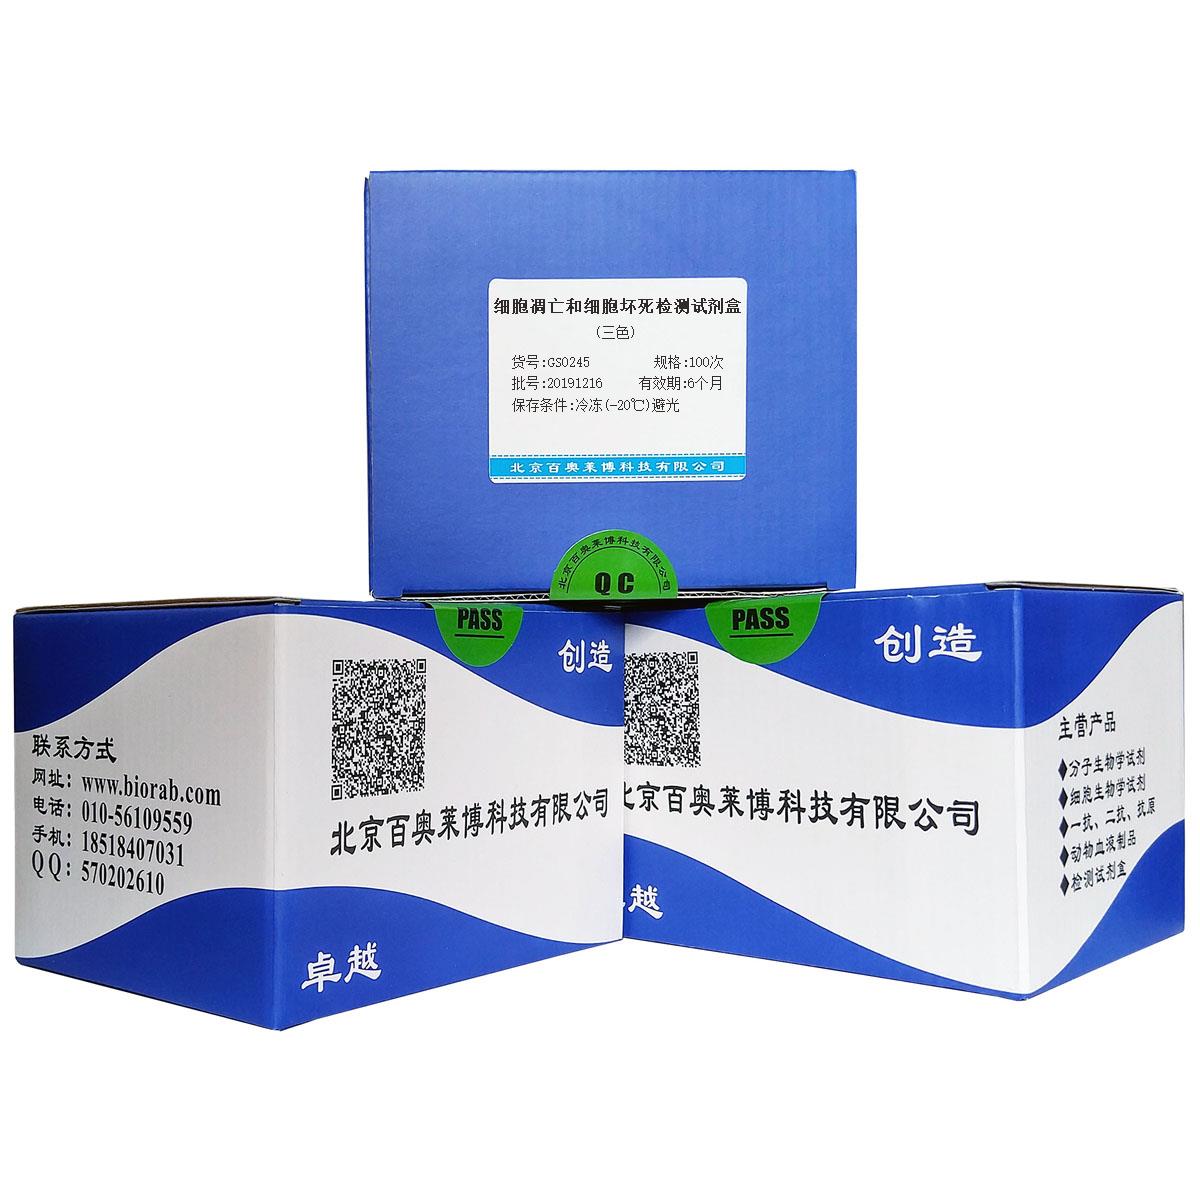 细胞凋亡和细胞坏死检测试剂盒(三色)北京供应商